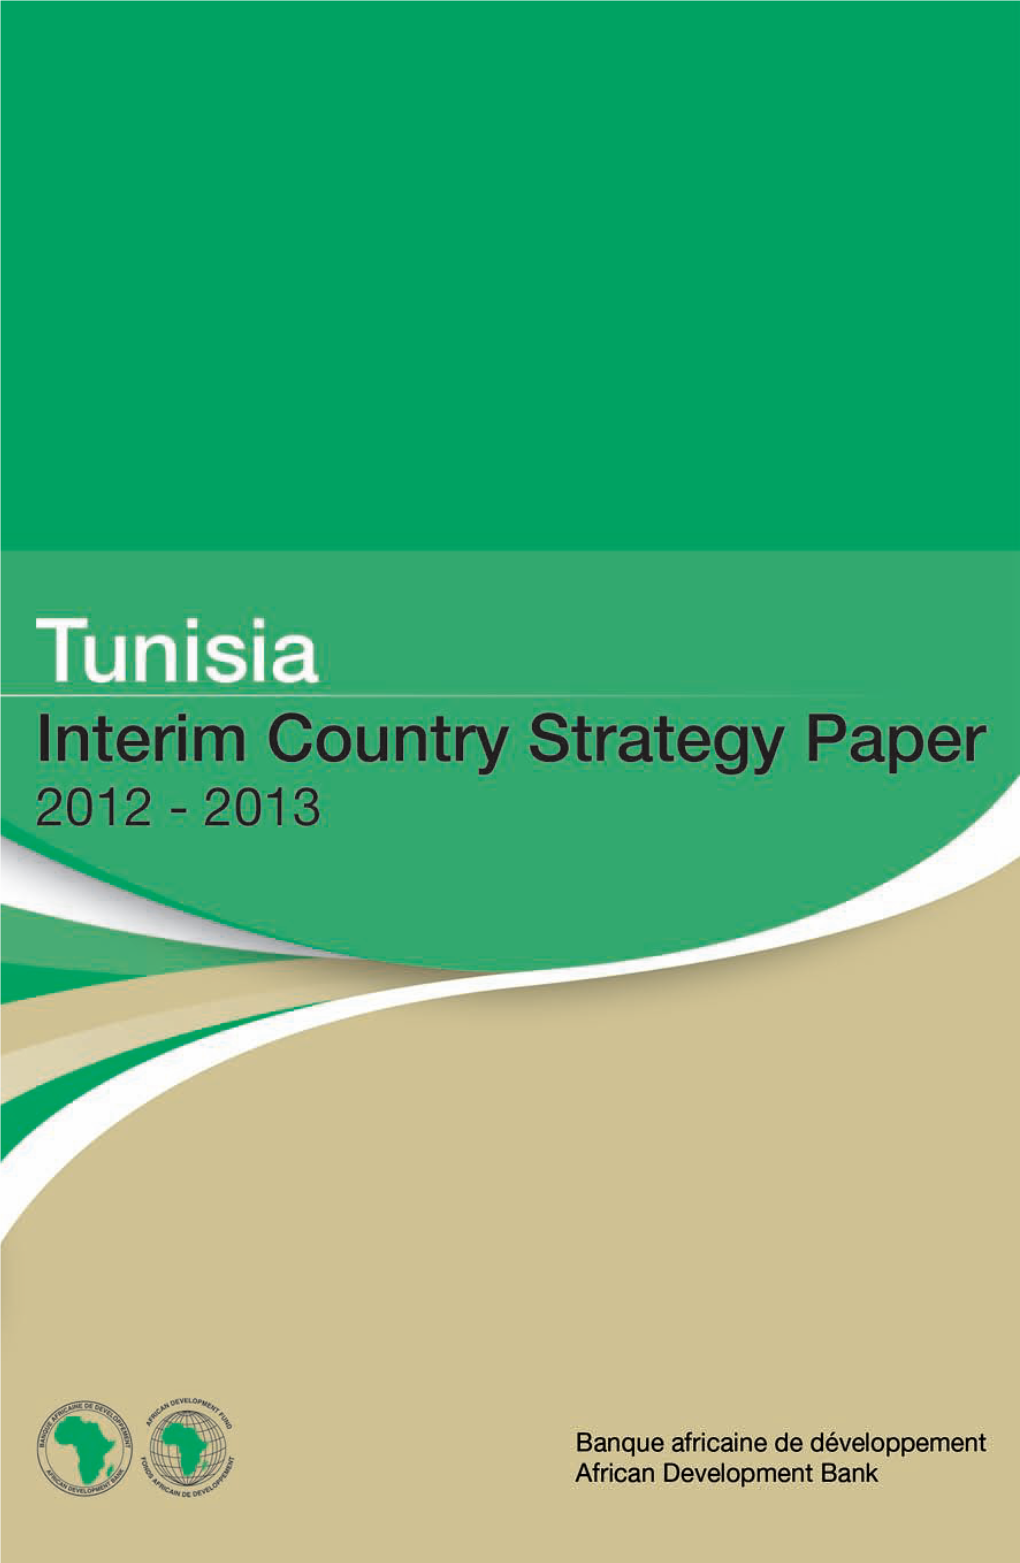 Tunisia Interim Country Strategy Paper 2012 - 2013